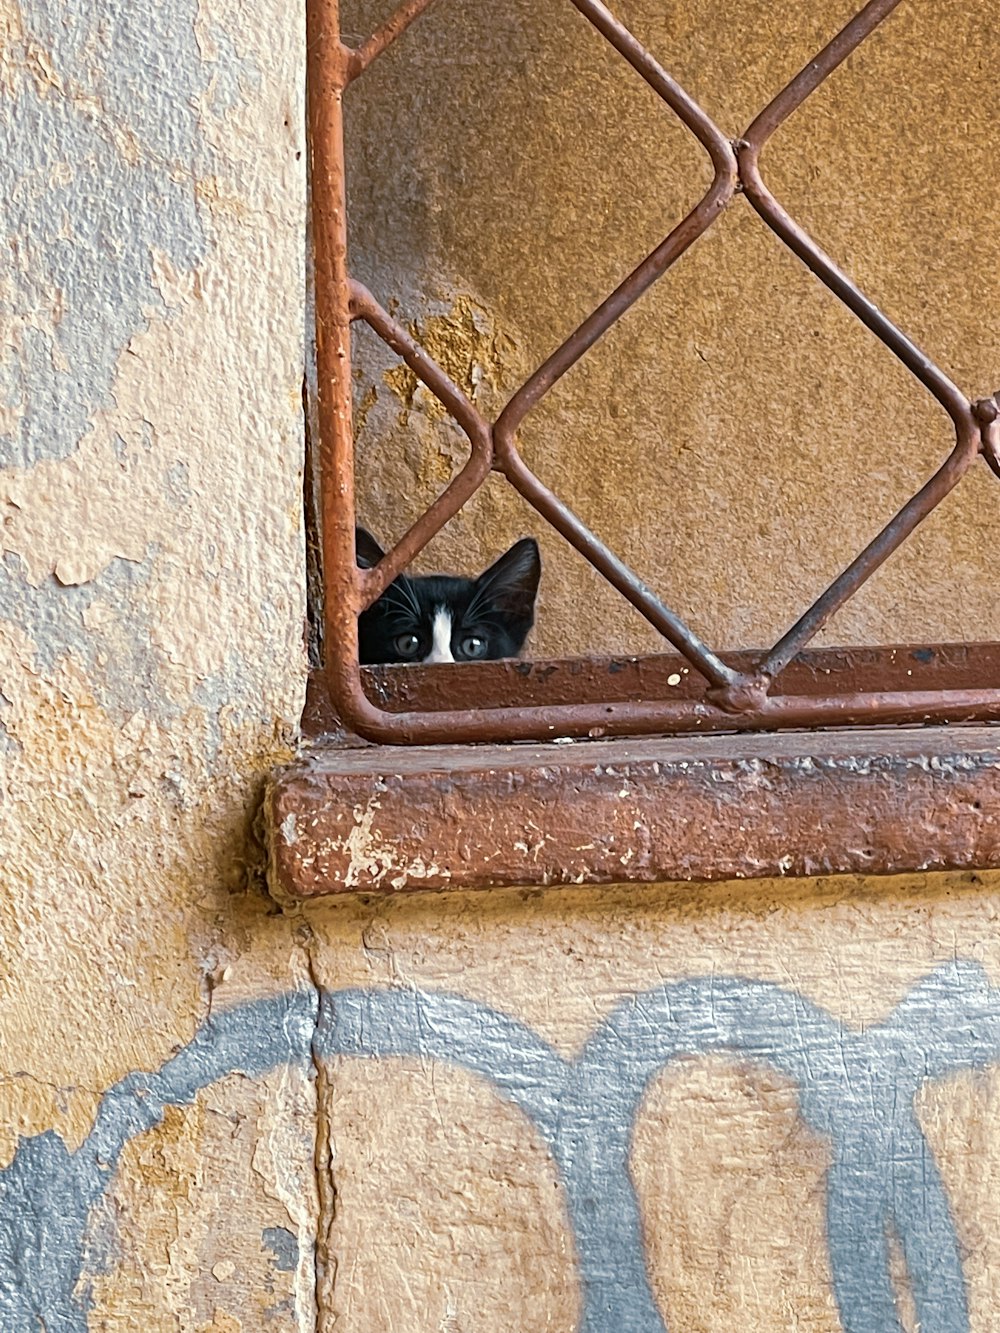 Eine schwarz-weiße Katze schaut aus dem Fenster